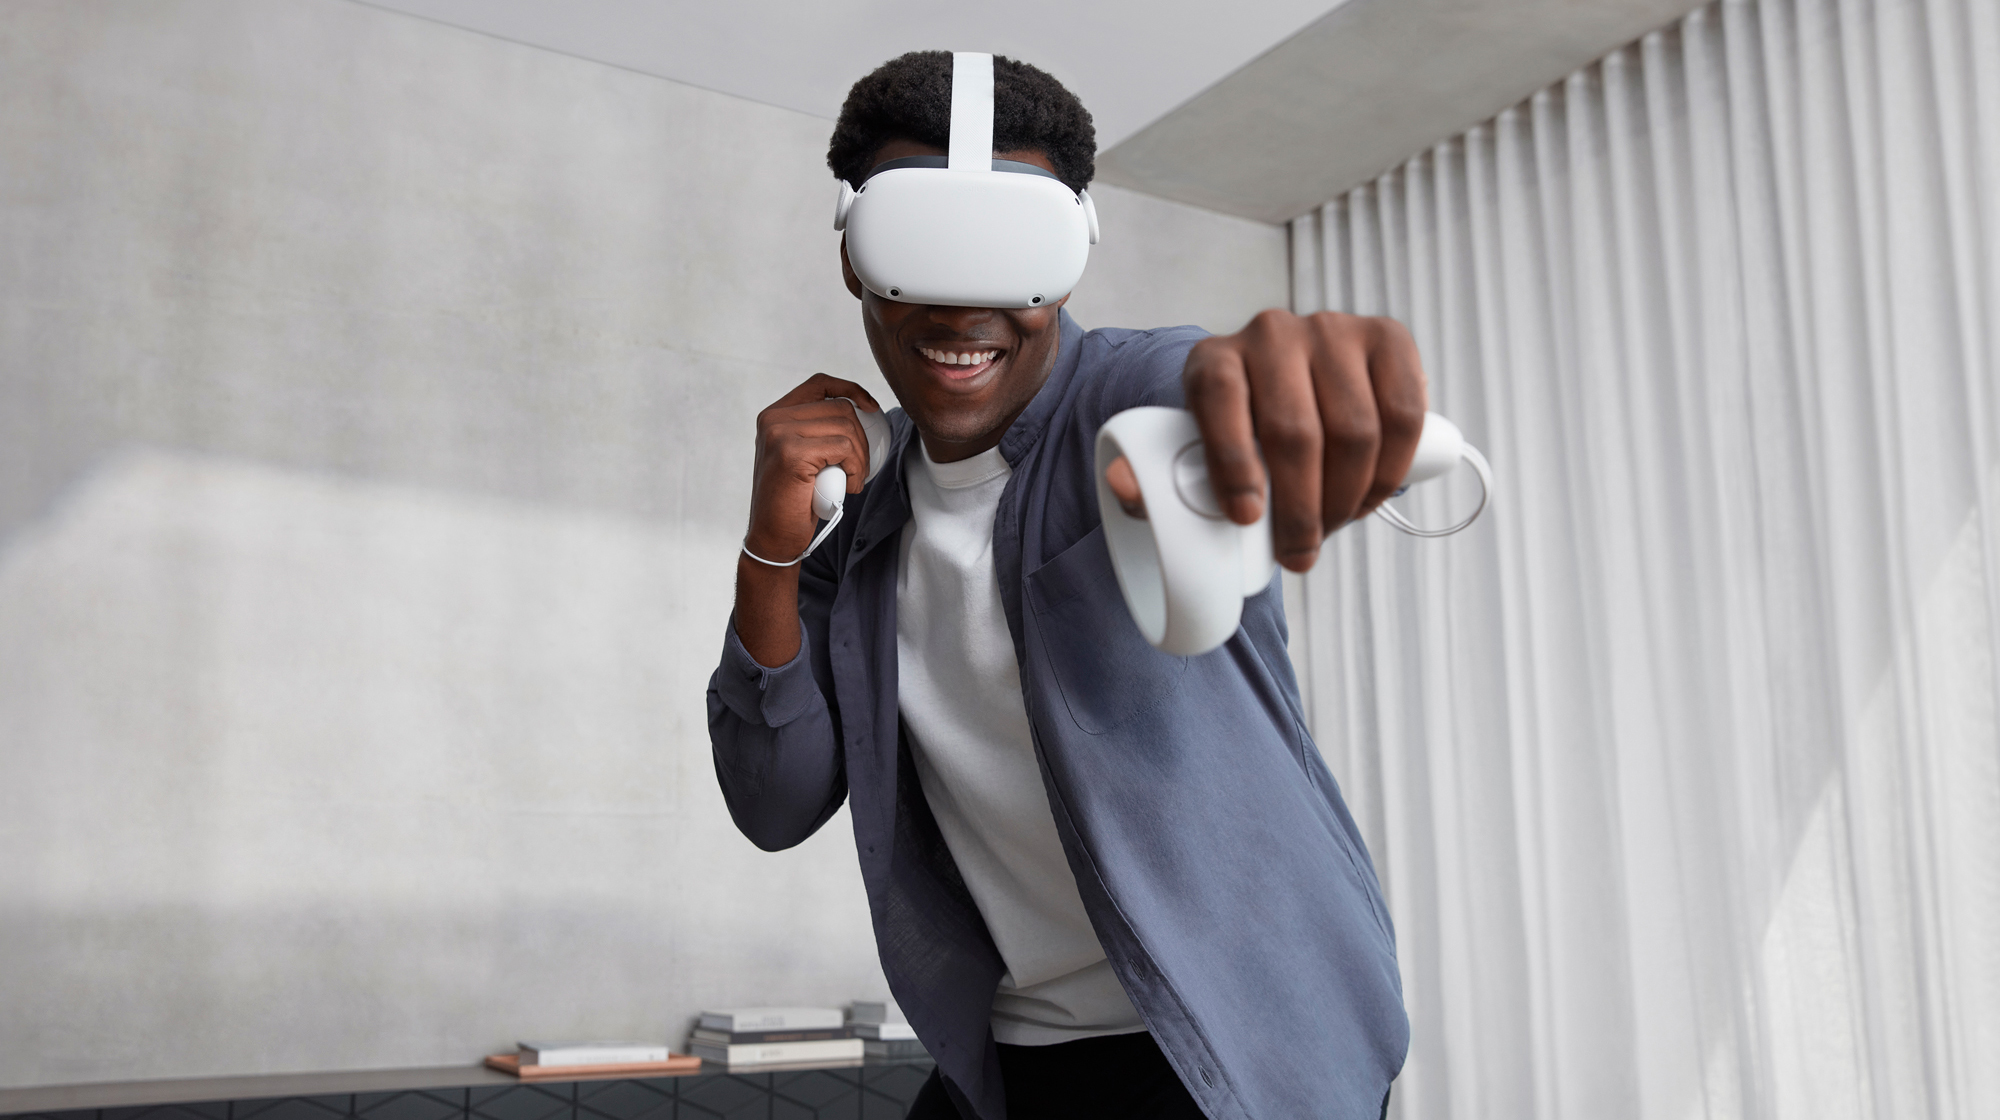 Meta may make a mini-LED Oculus Quest 2 Pro VR headset